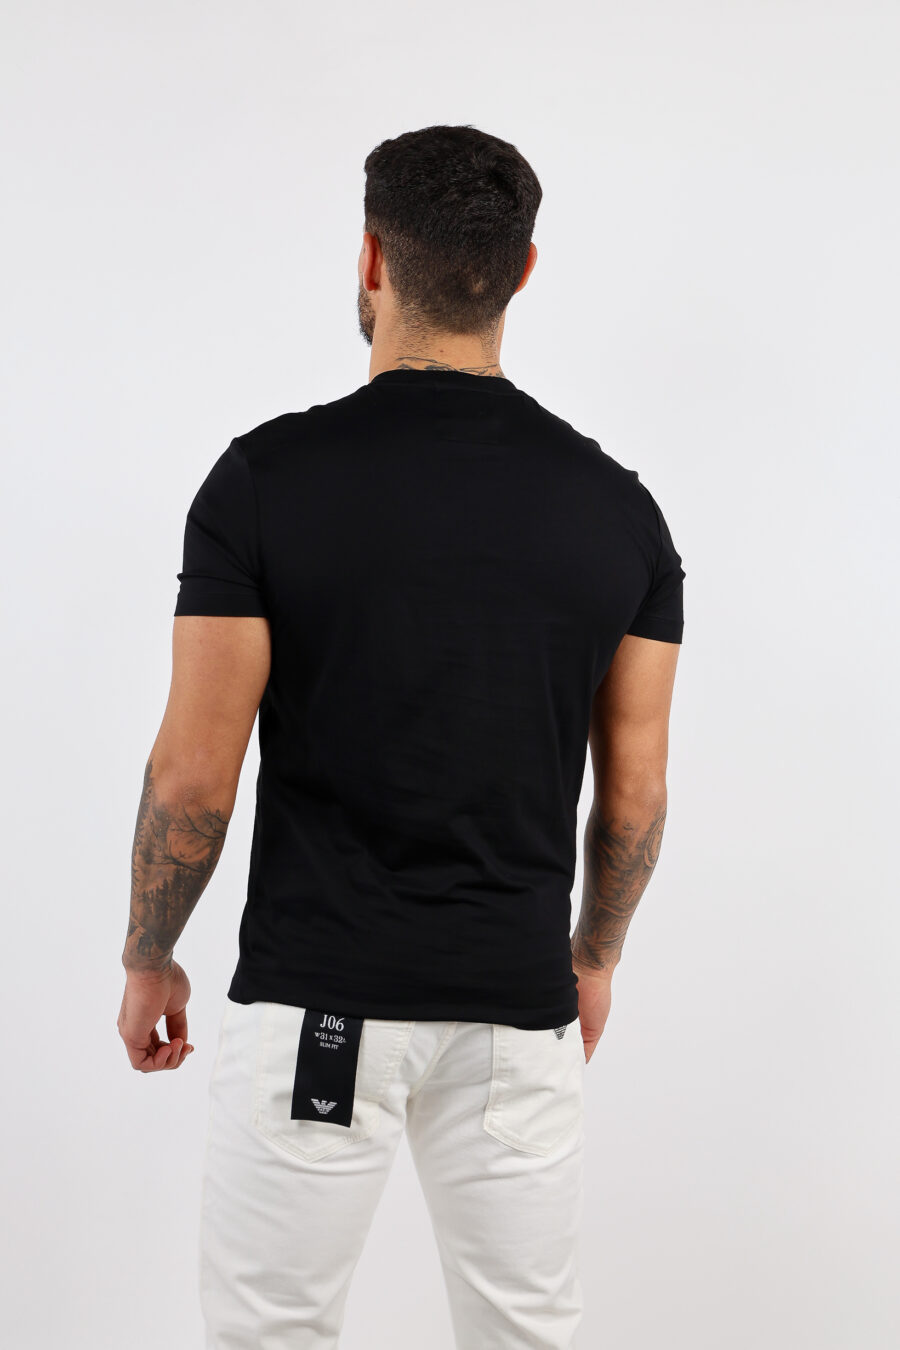 Schwarzes T-shirt mit weißem Schriftzug maxilogo - BLS Fashion 90